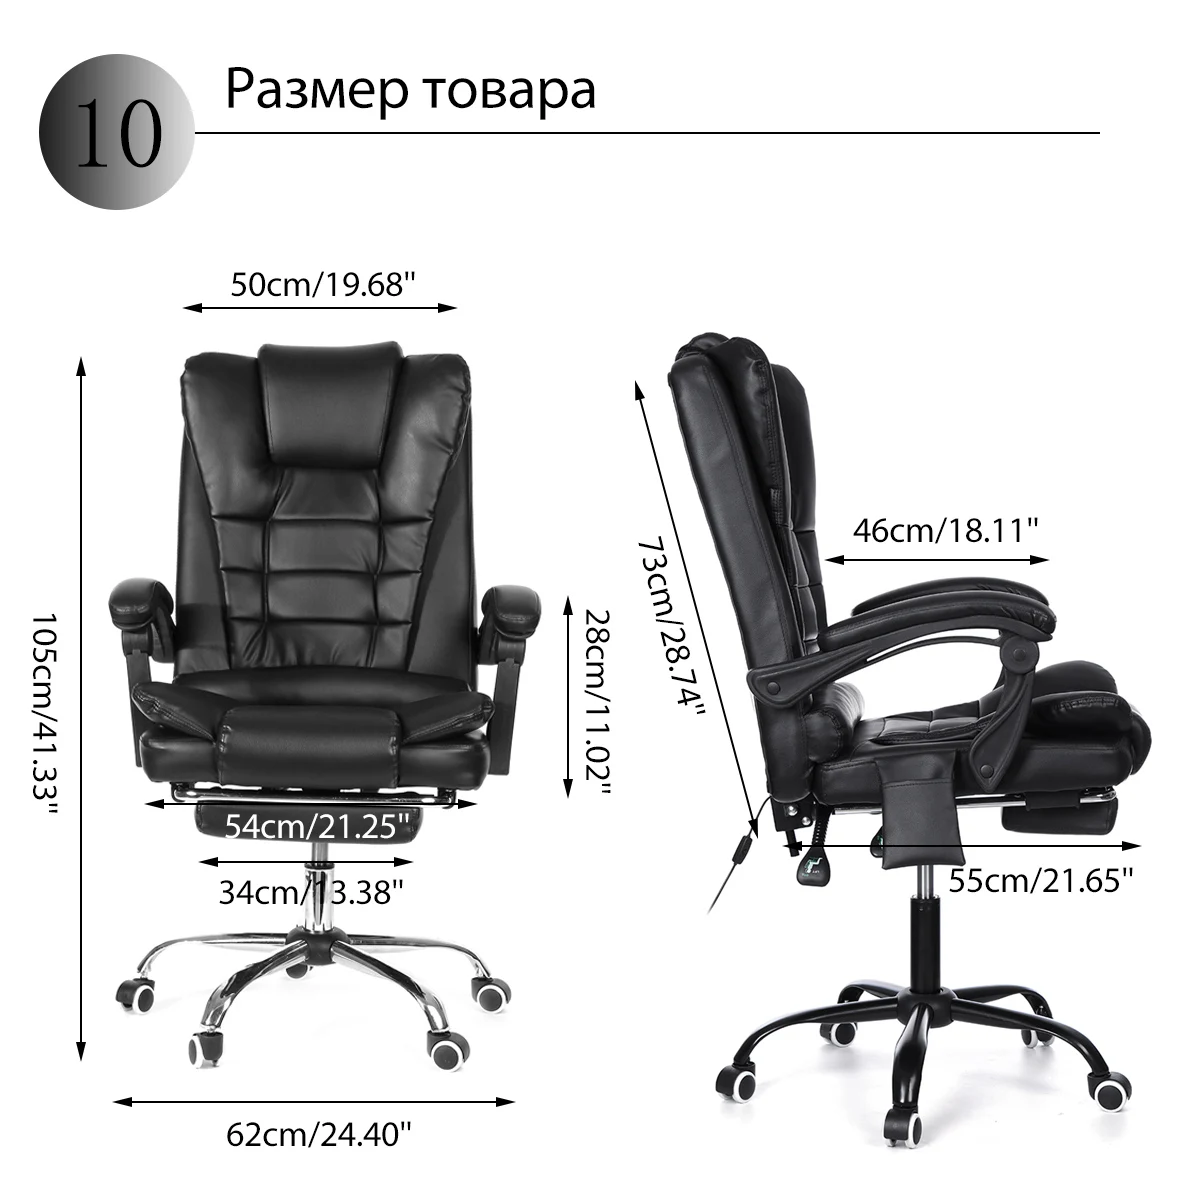 Домашний Офисный Компьютерный стол Boss массажное кресло с подставкой для ног подлокотник домашний подъемный регулируемый эргономичный откидной игровой стул